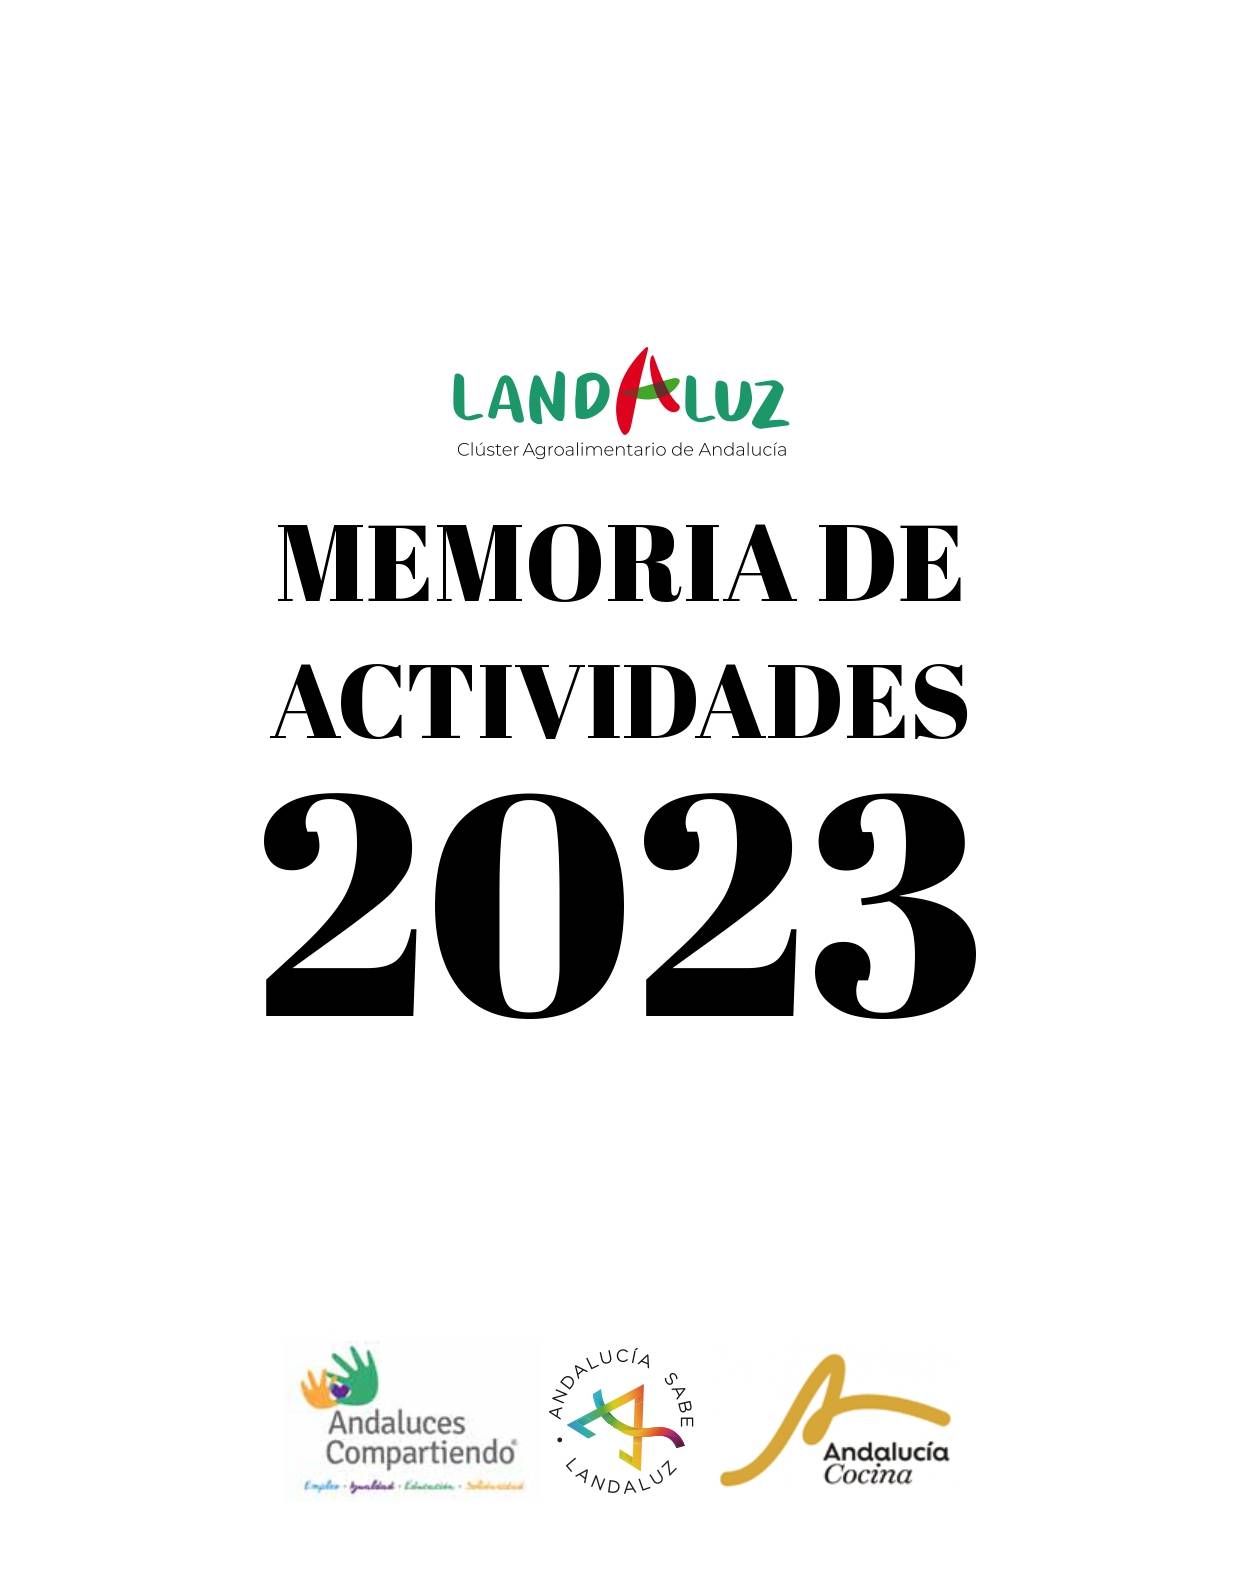 Memoria Landaluz 2023 v6 1 page 0001 1